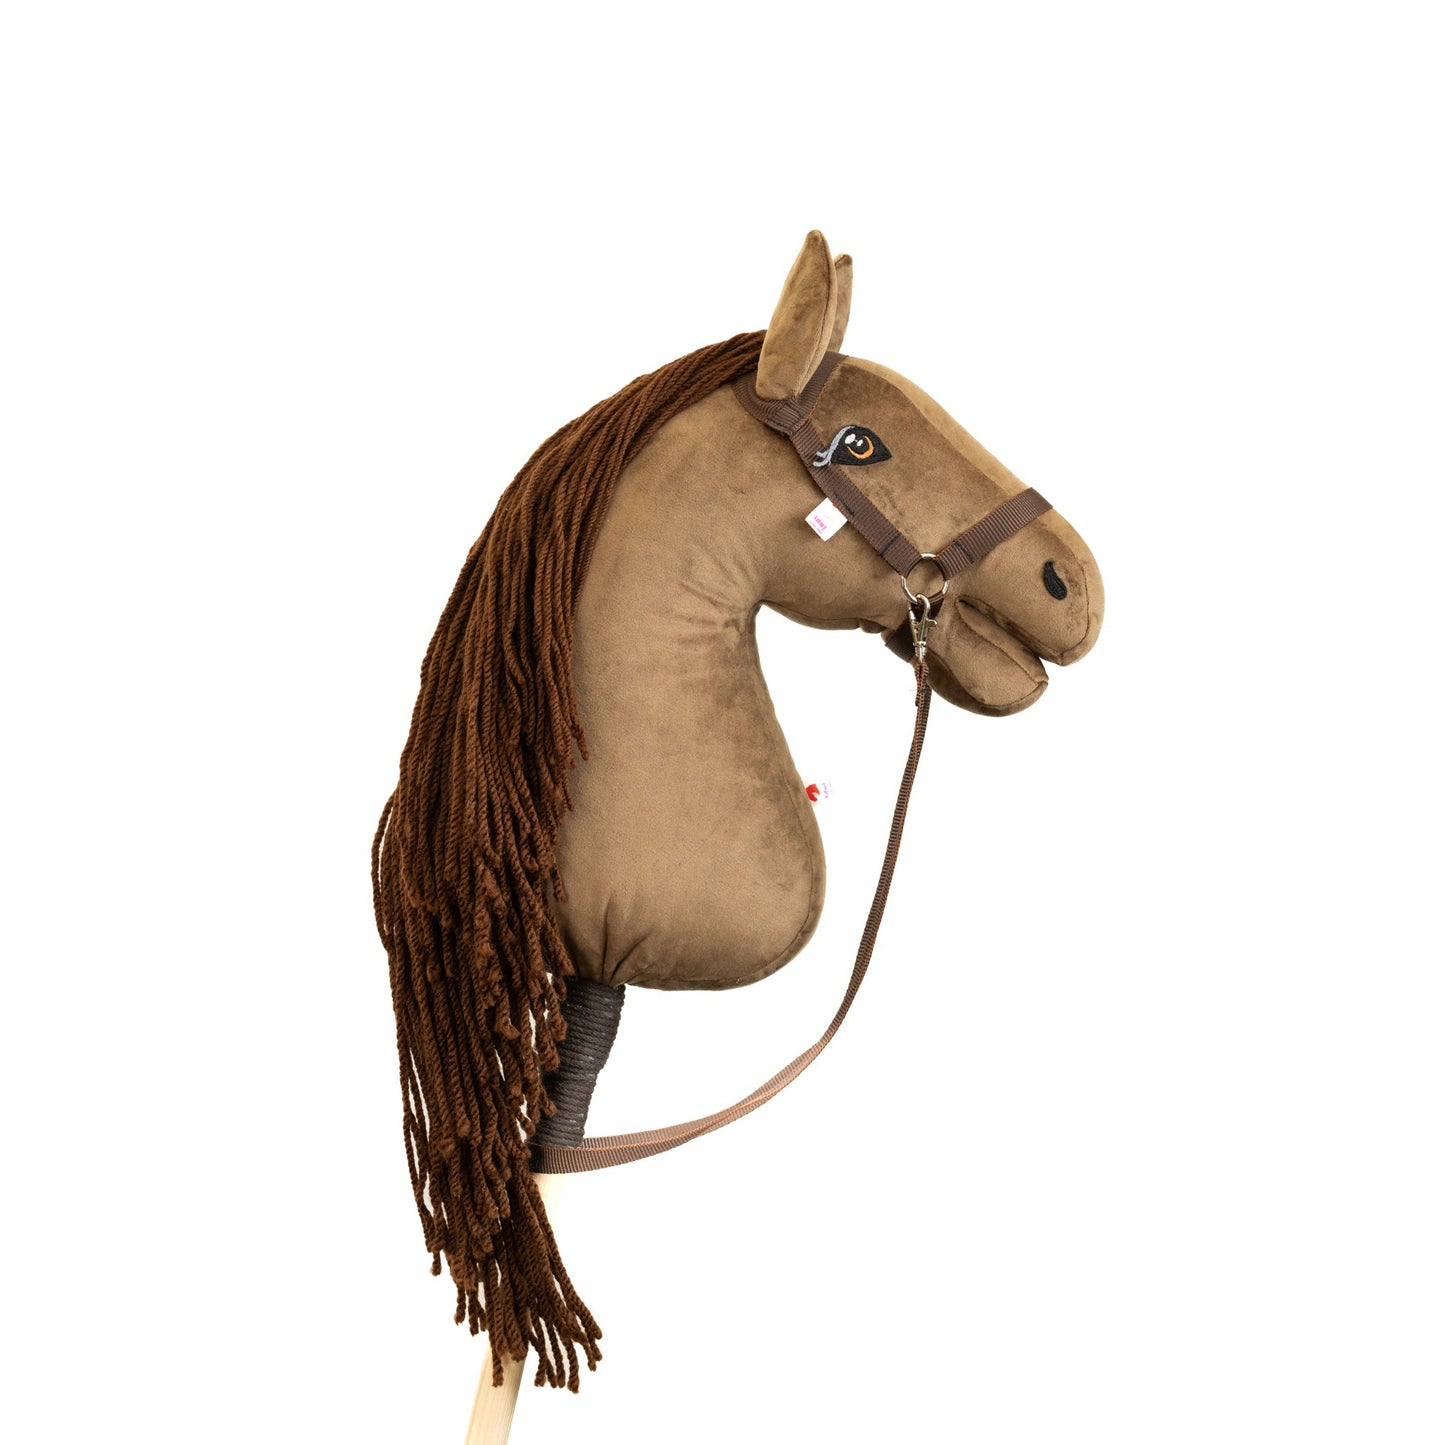 Chelsea - Brown mane - Adult horse